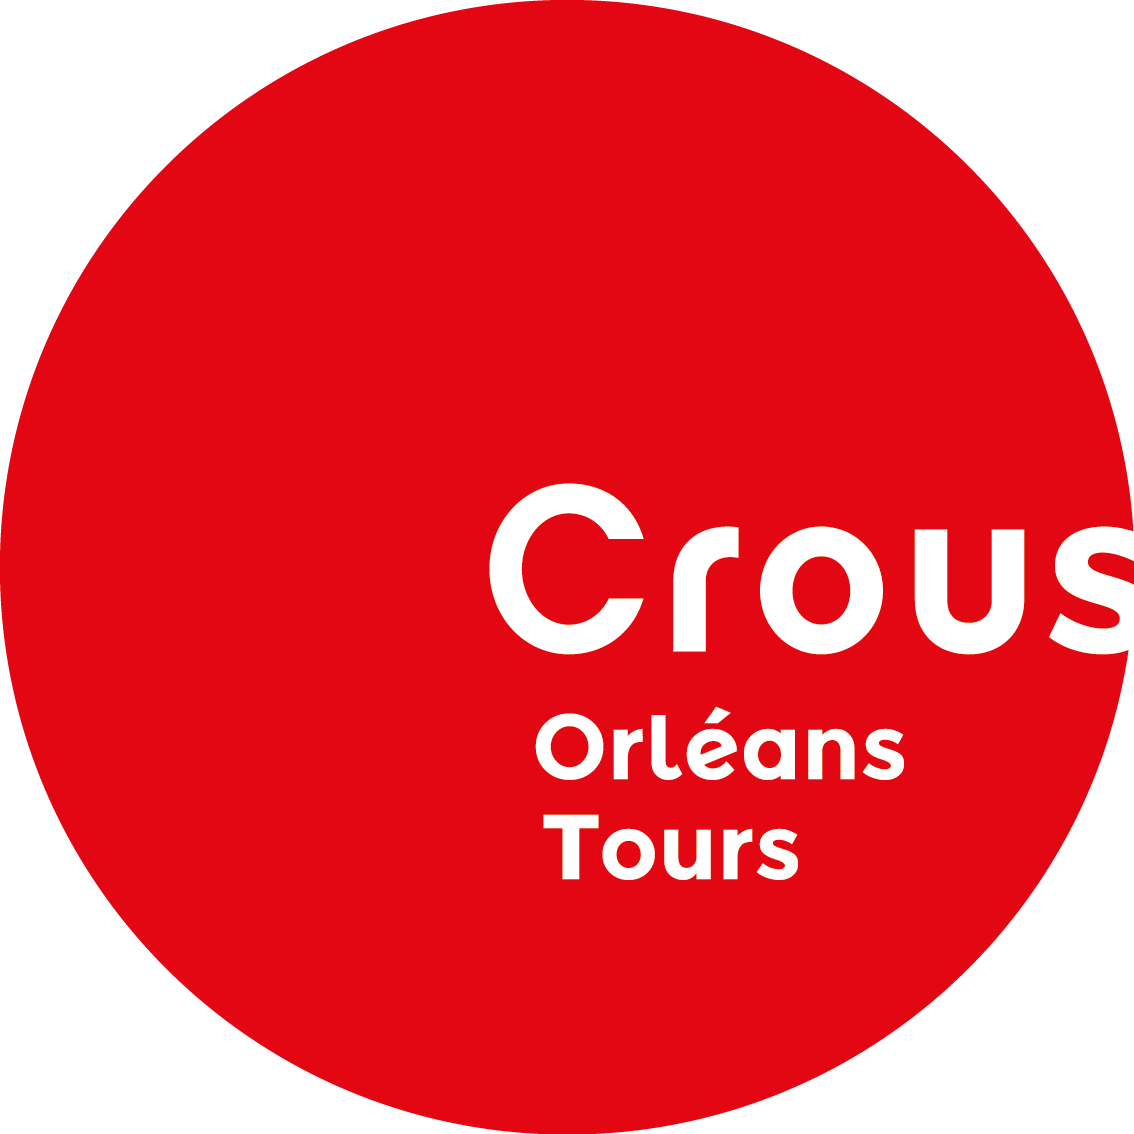 contact bourse crous orleans tours